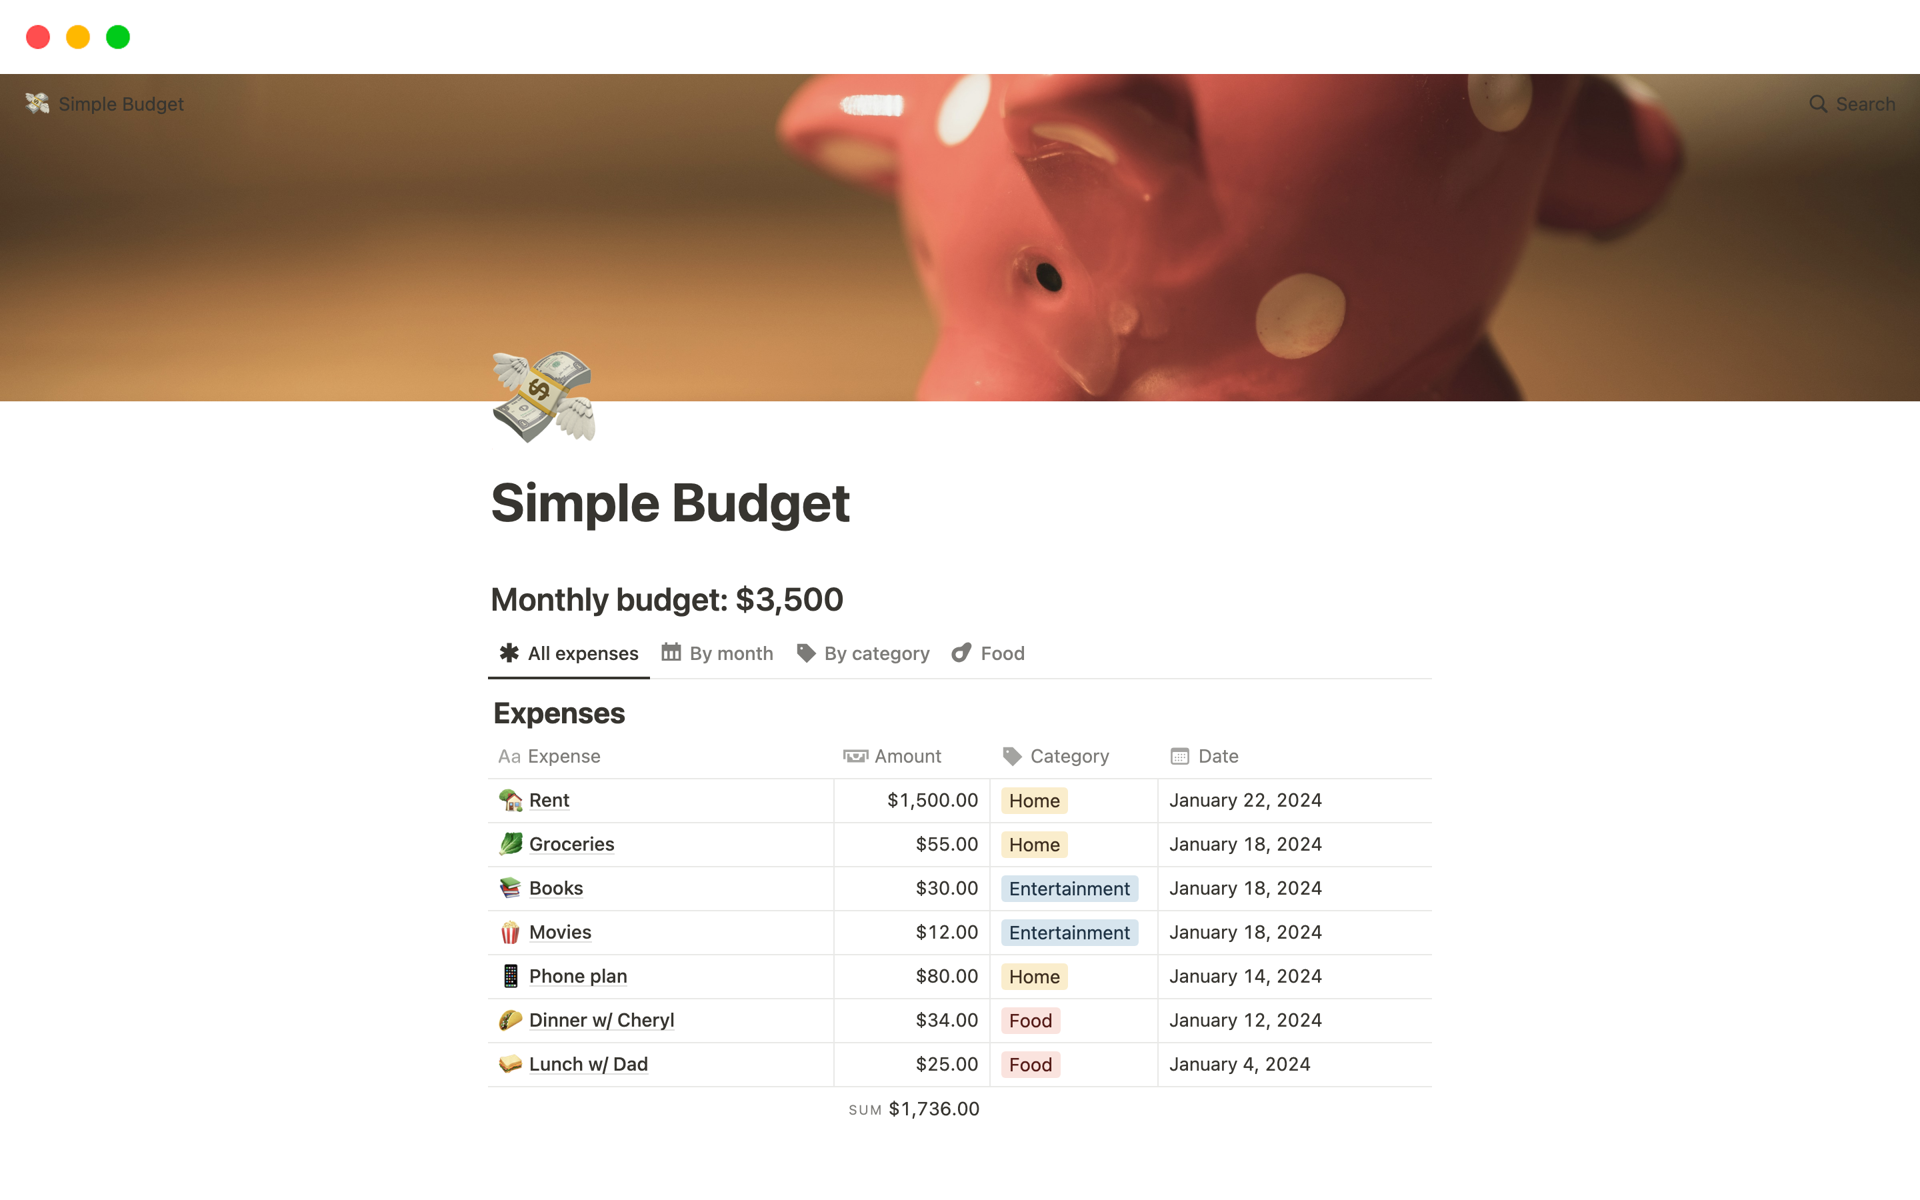 Vista previa de una plantilla para Presupuesto sencillo